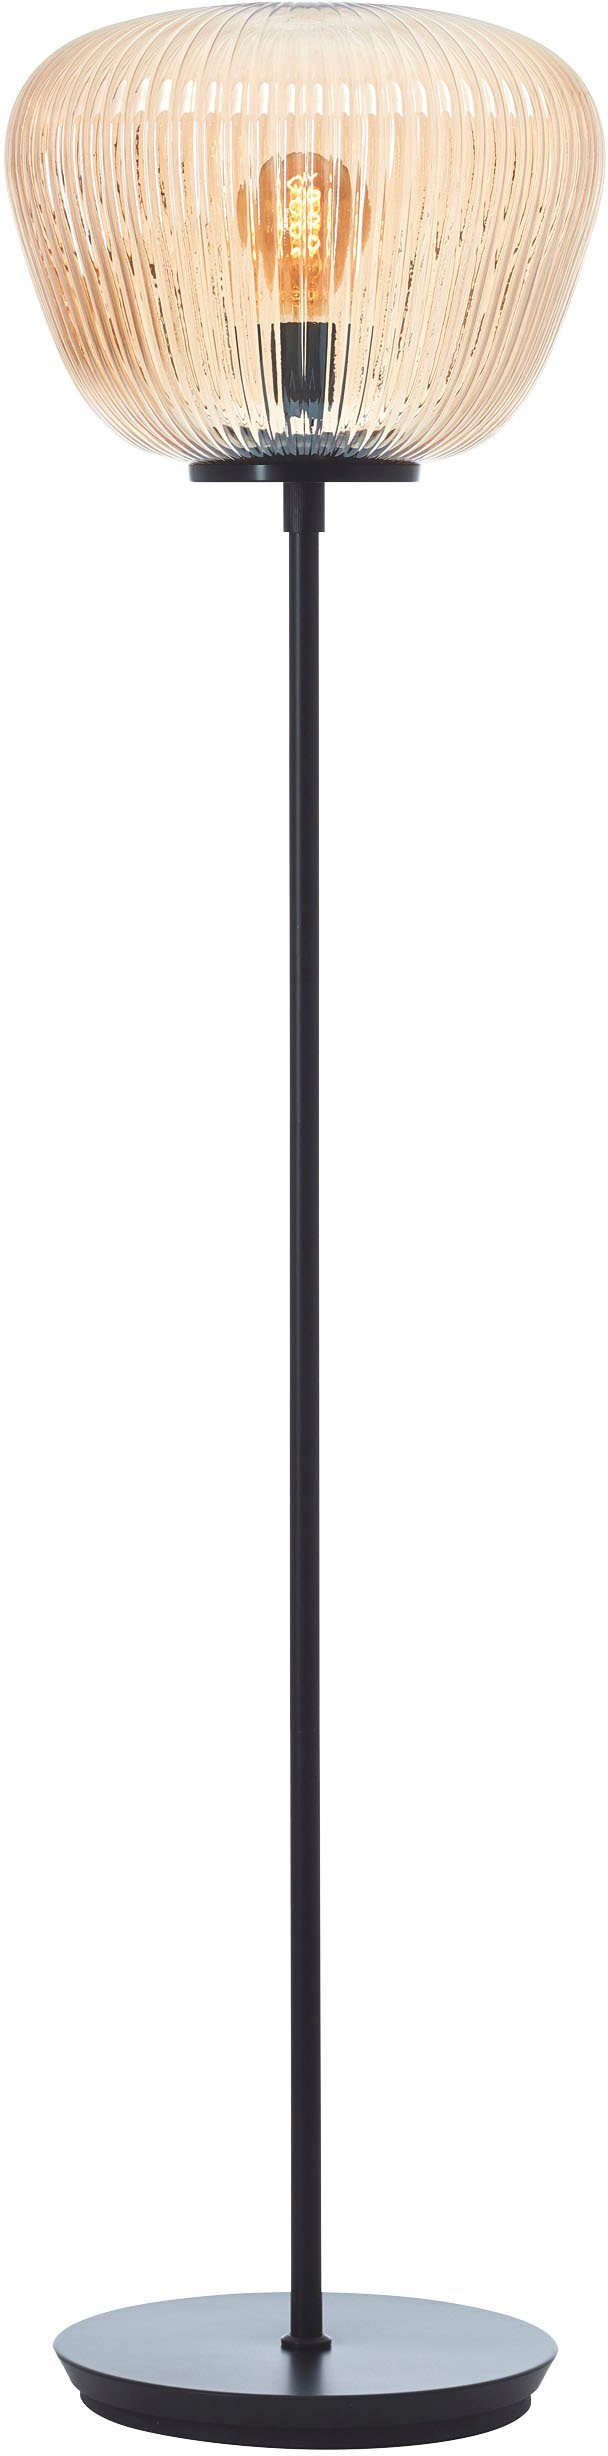 Brilliant Stehlampe Kaizen, ohne Leuchtmittel, Riffelglas, 140 x 35 cm, E27, Amber-Bernsteinfarben